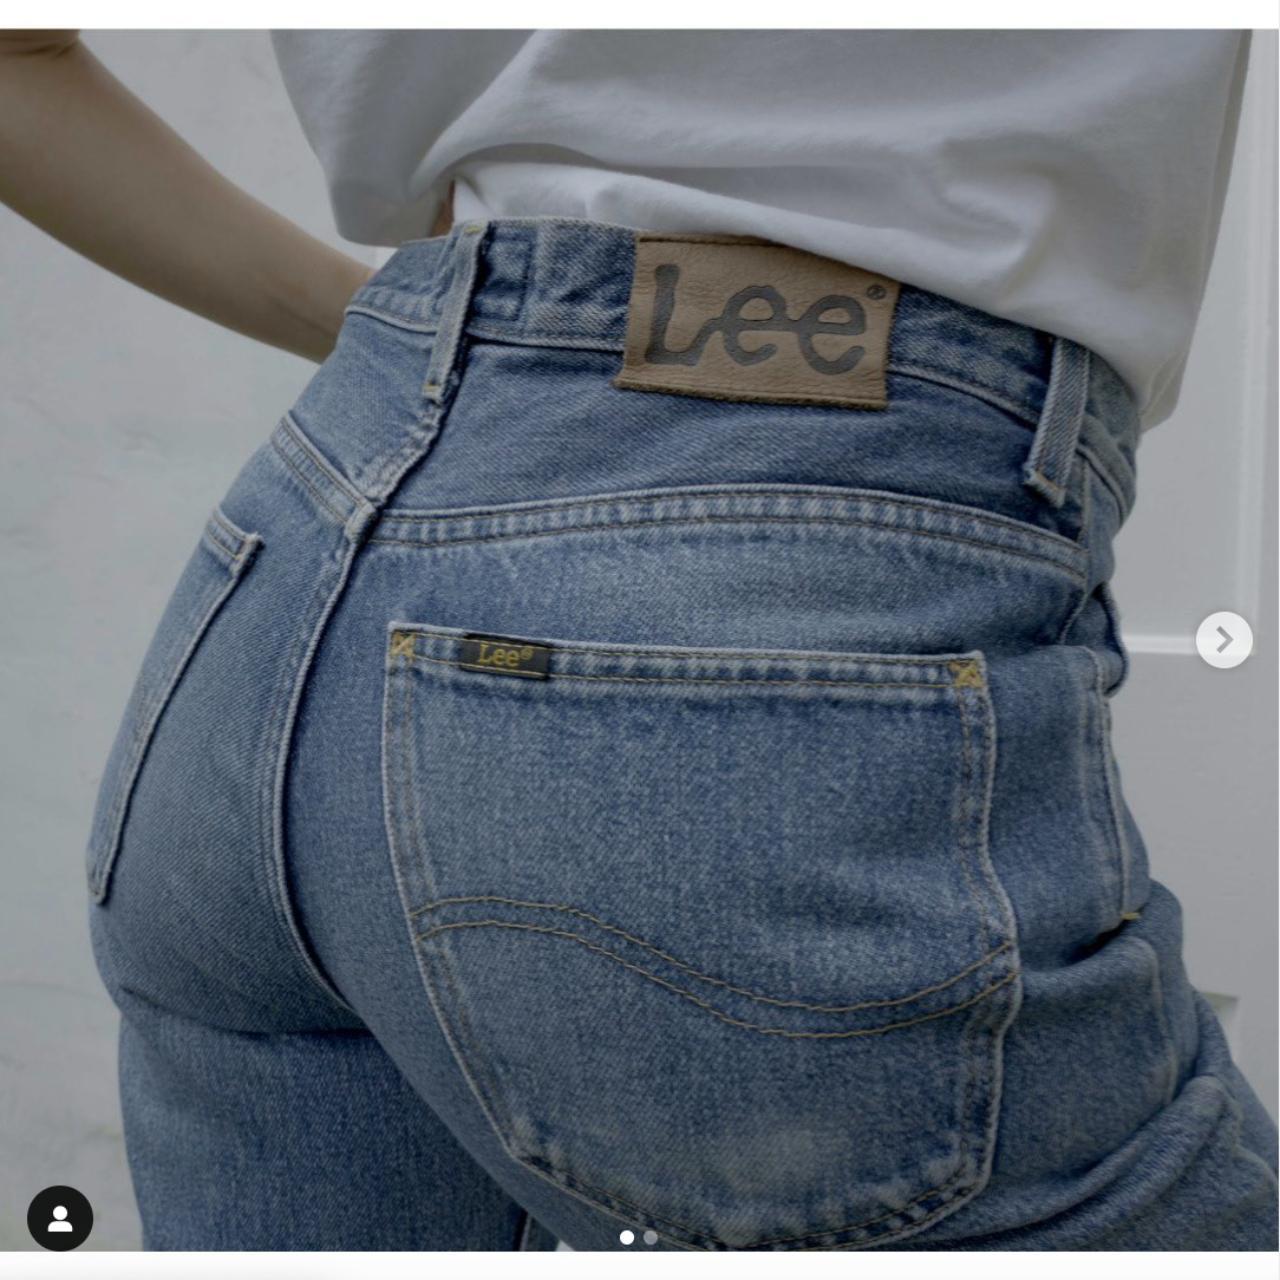 Original Lee 90s jeans. 100% cotton. W32 L32: Size... - Depop